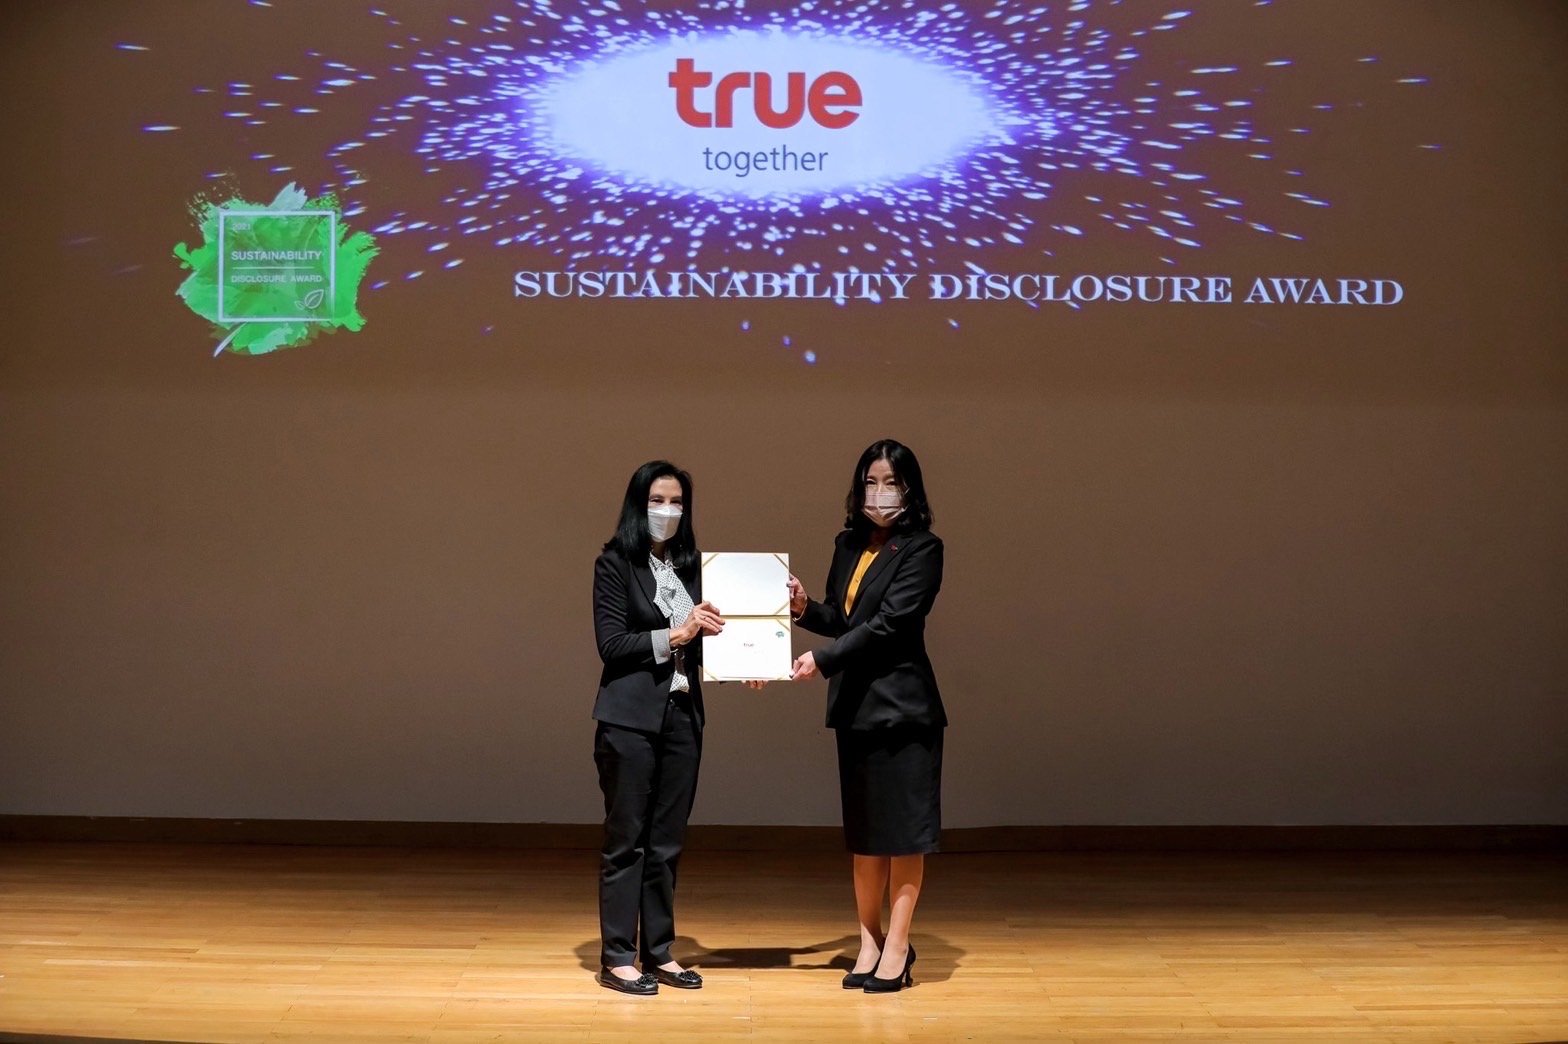 ย้ำภาพองค์กรดิจิทัล ดำเนินธุรกิจโปร่งใส ทรู รับรางวัล “Sustainability Disclosure Award” 3 ปีซ้อน มุ่งสู่การเป็น Tech Company พร้อมเติบโตอย่างยั่งยืนไปด้วยกัน